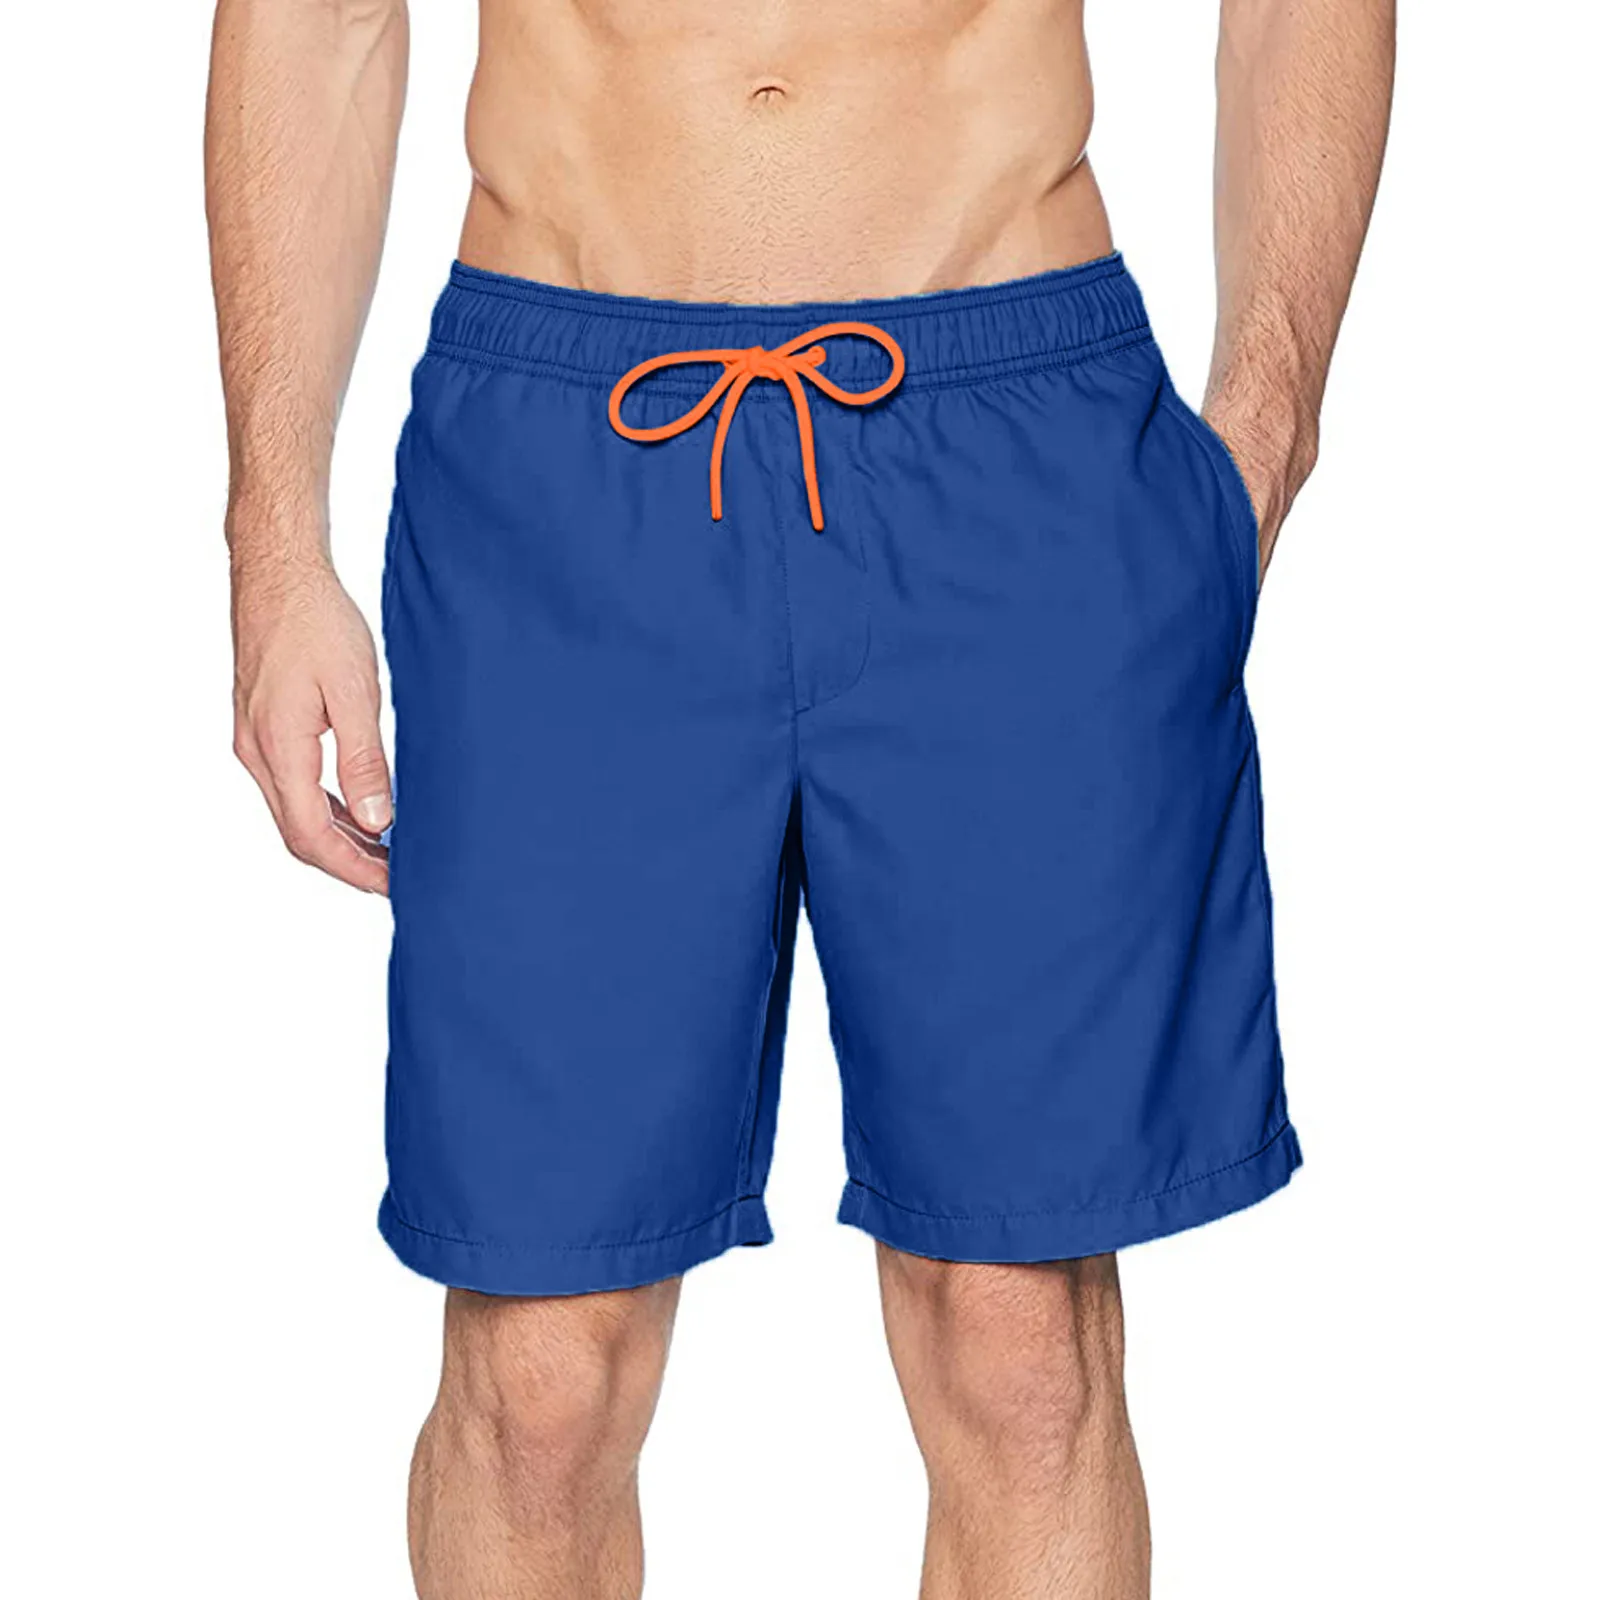 Tanie Męskie stroje kąpielowe spodenki do pływania kąpielówki szorty plażowe spodnie